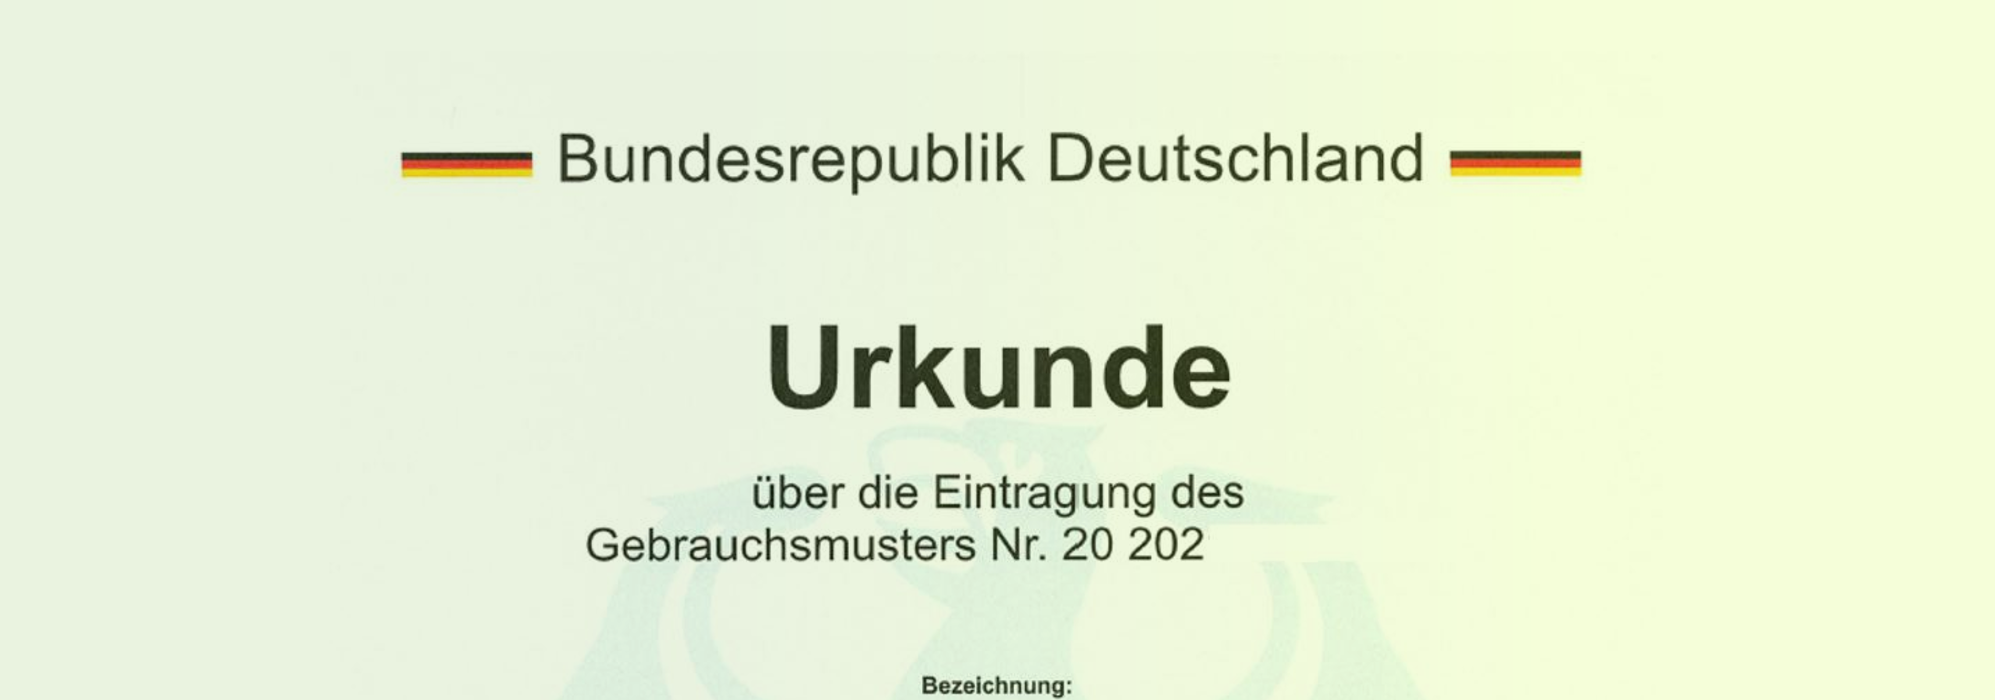 Deutsche Gebrauchsmuster Urkunde